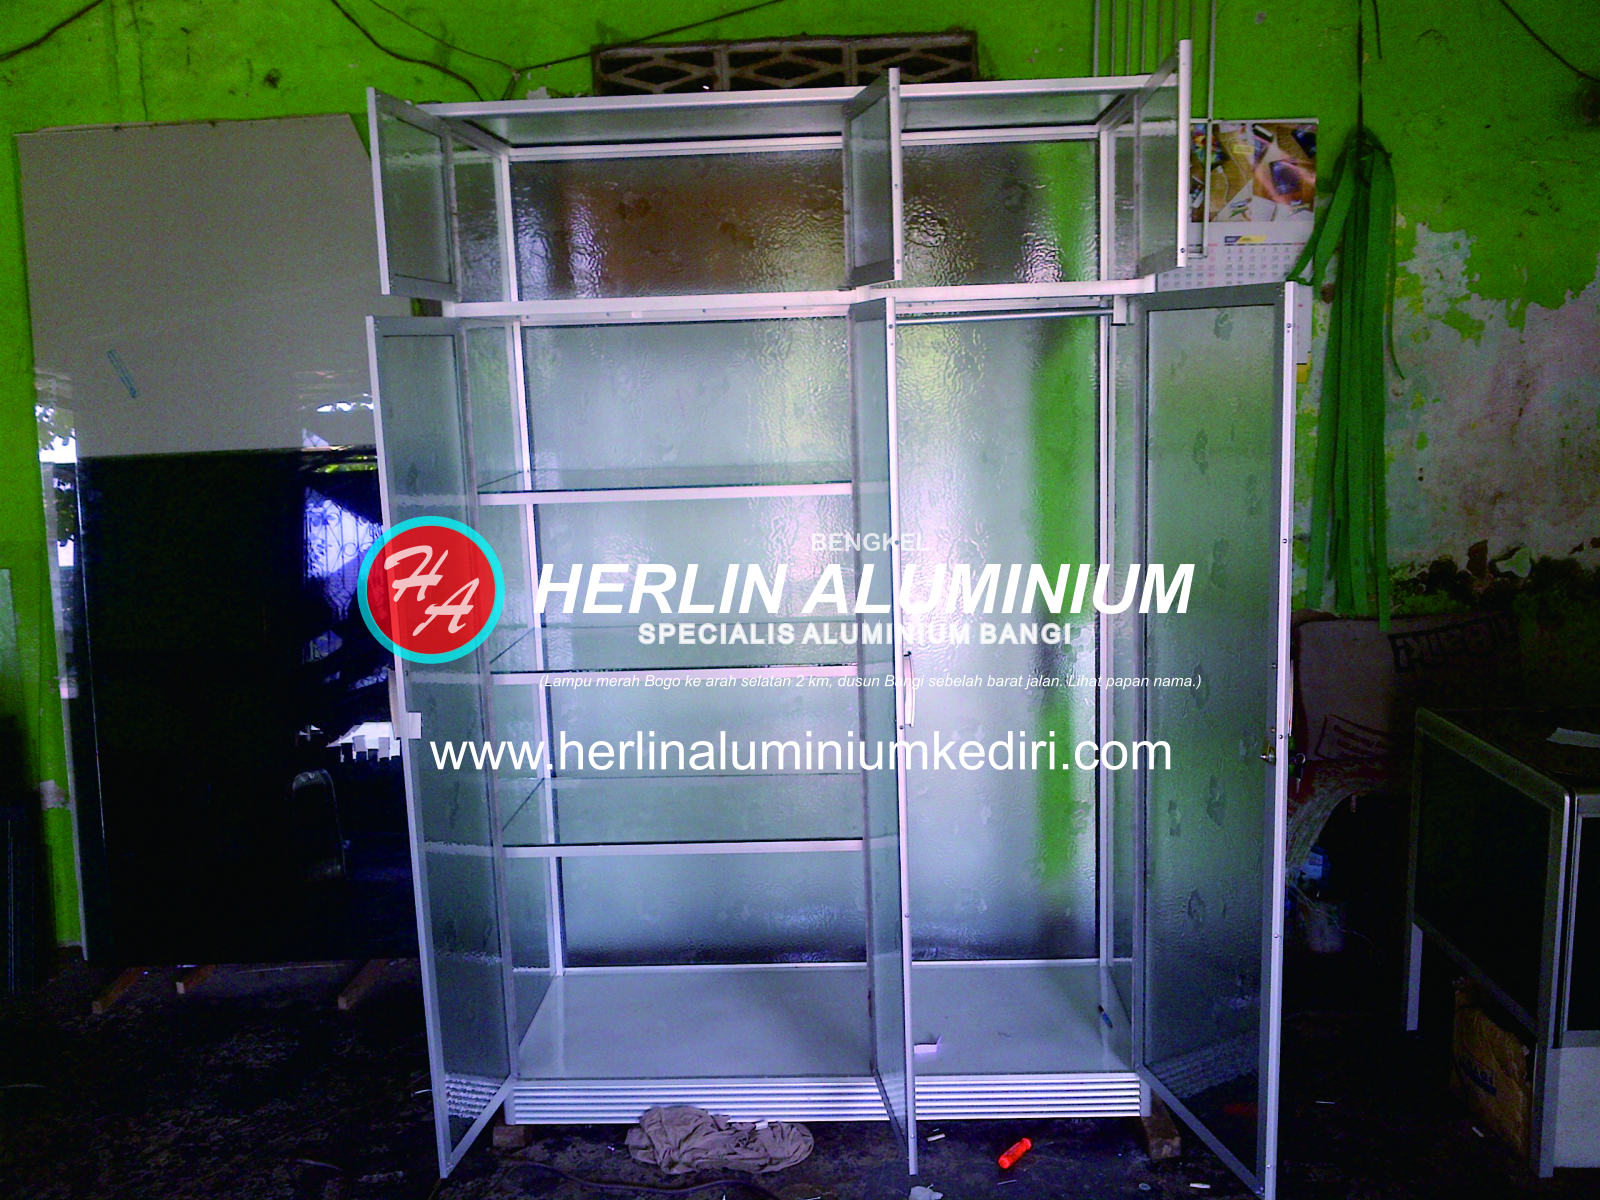 Daftar harga Lemari Pakaian Aluminium di Herlin Aluminium 